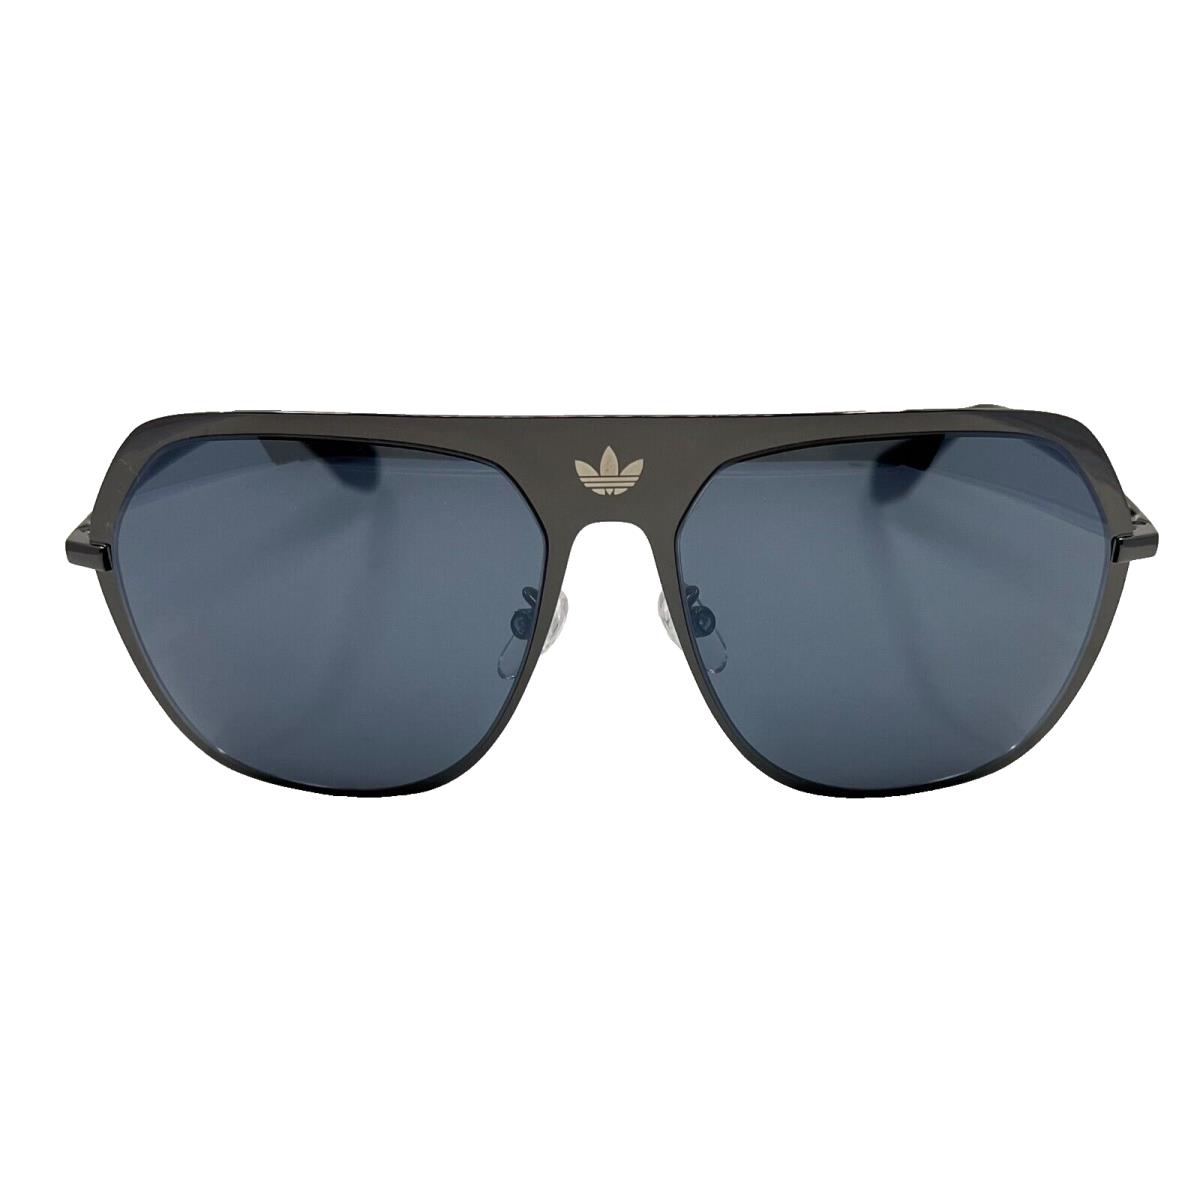 Adidas Originals - OR0037 08C 58/15/140 - Gun - Sunglasses Case